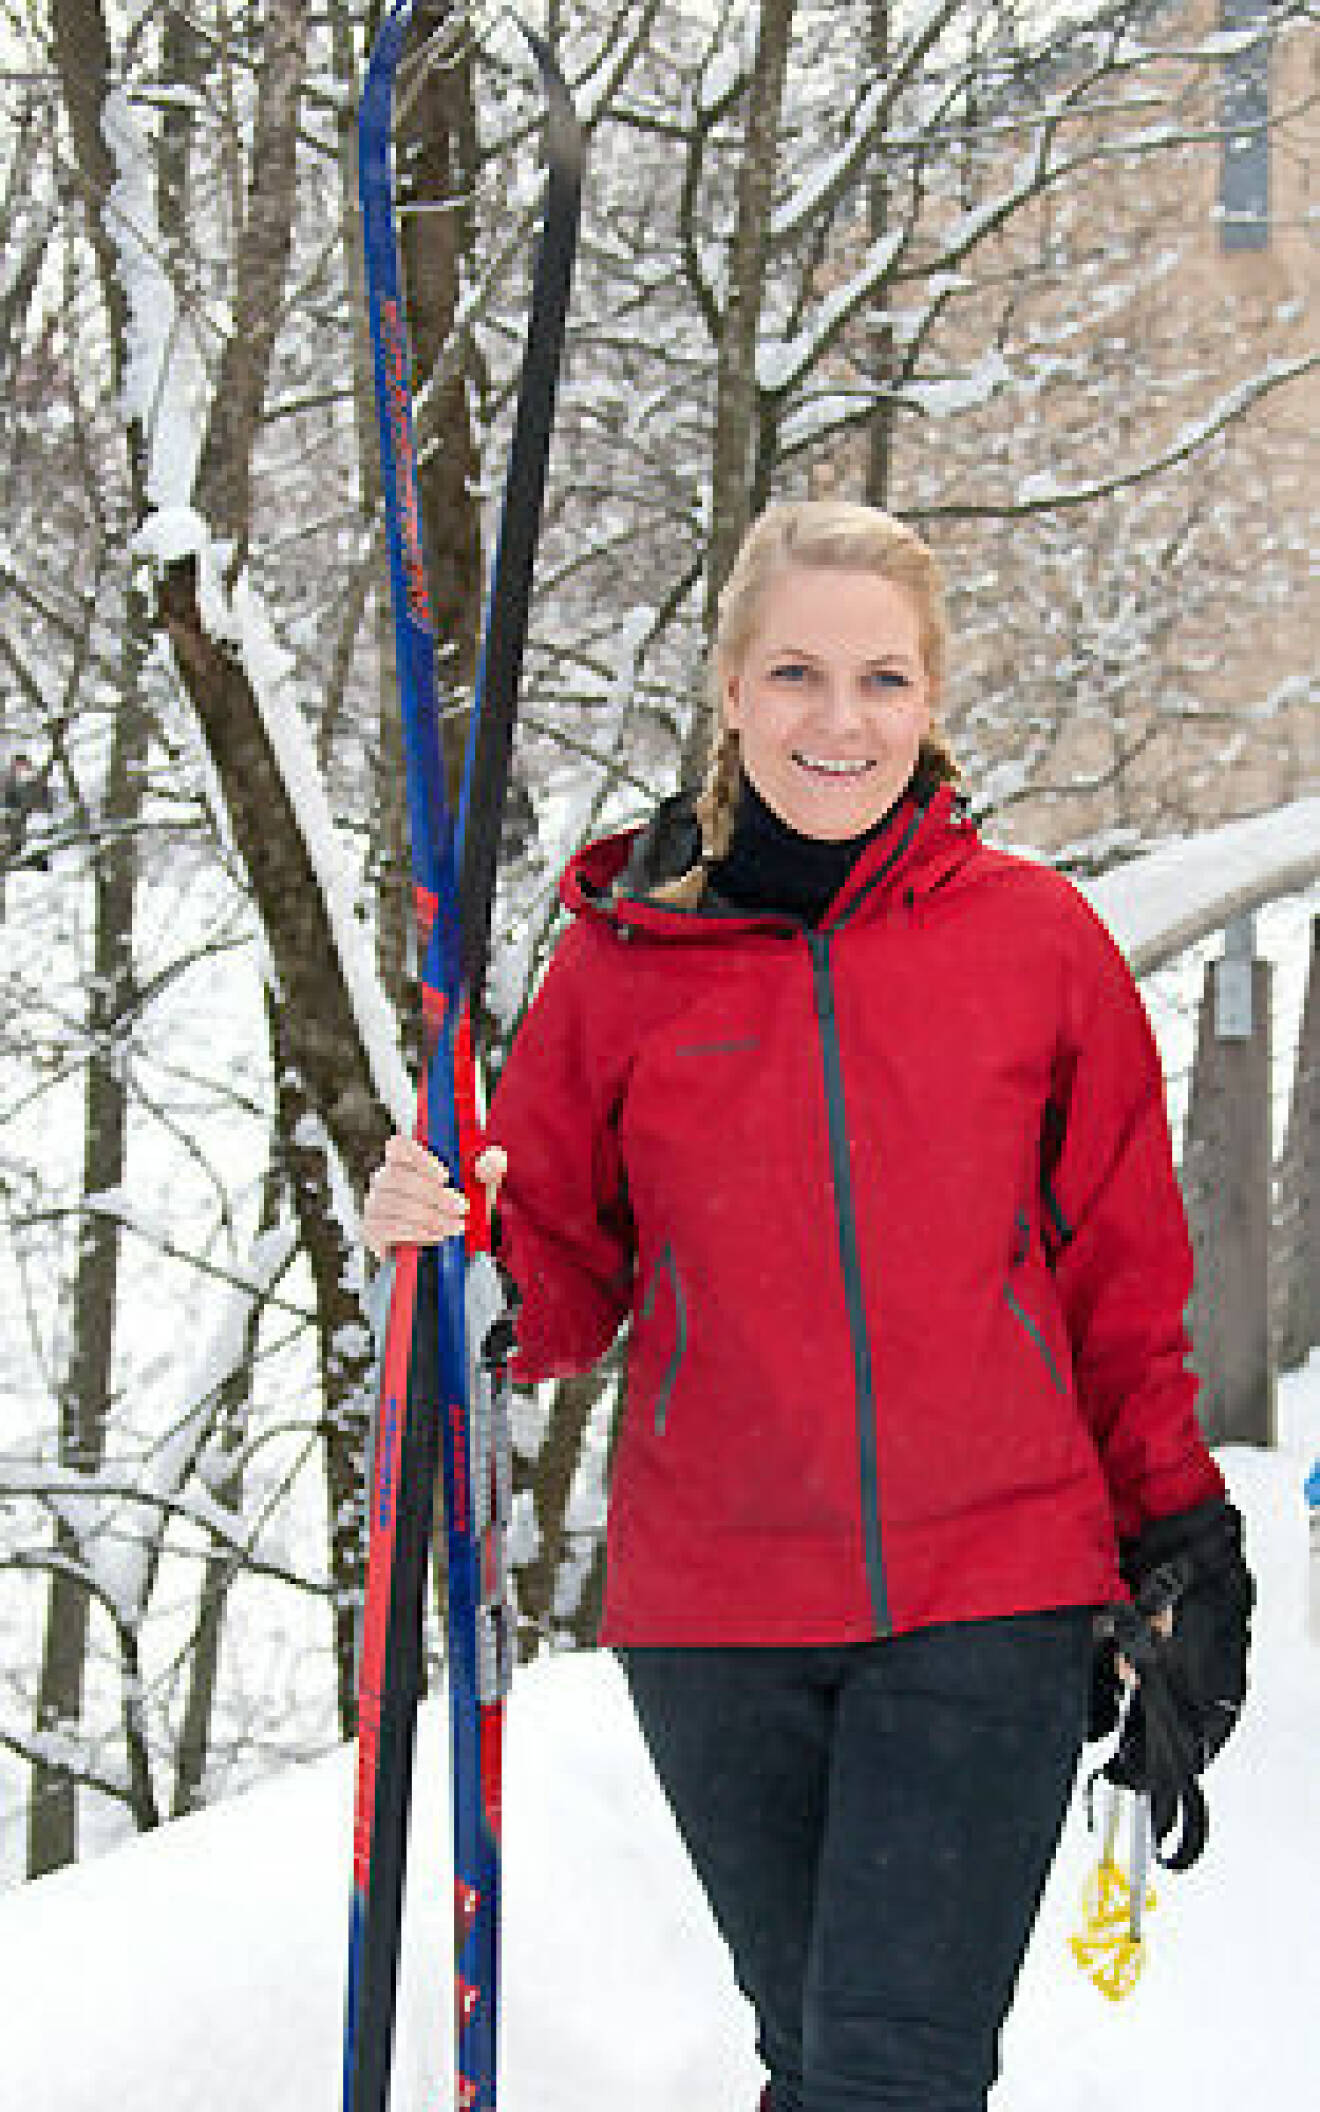 Kronprinsessan Mette-Marit älskar att åka skidor.